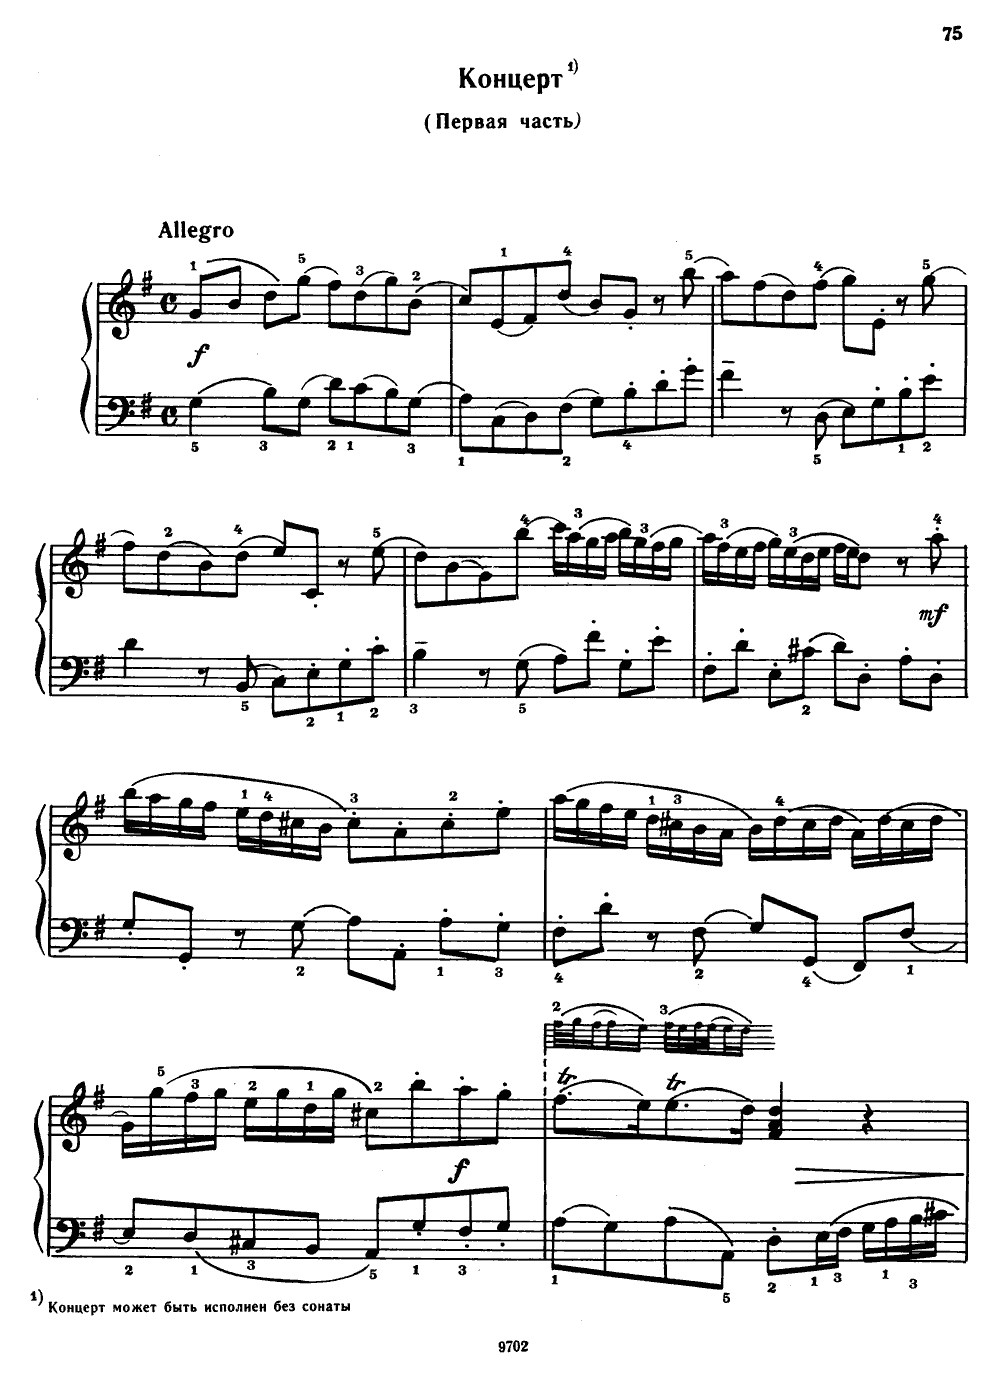 Concerto in G major, HWV 487 (George Frideric Handel)